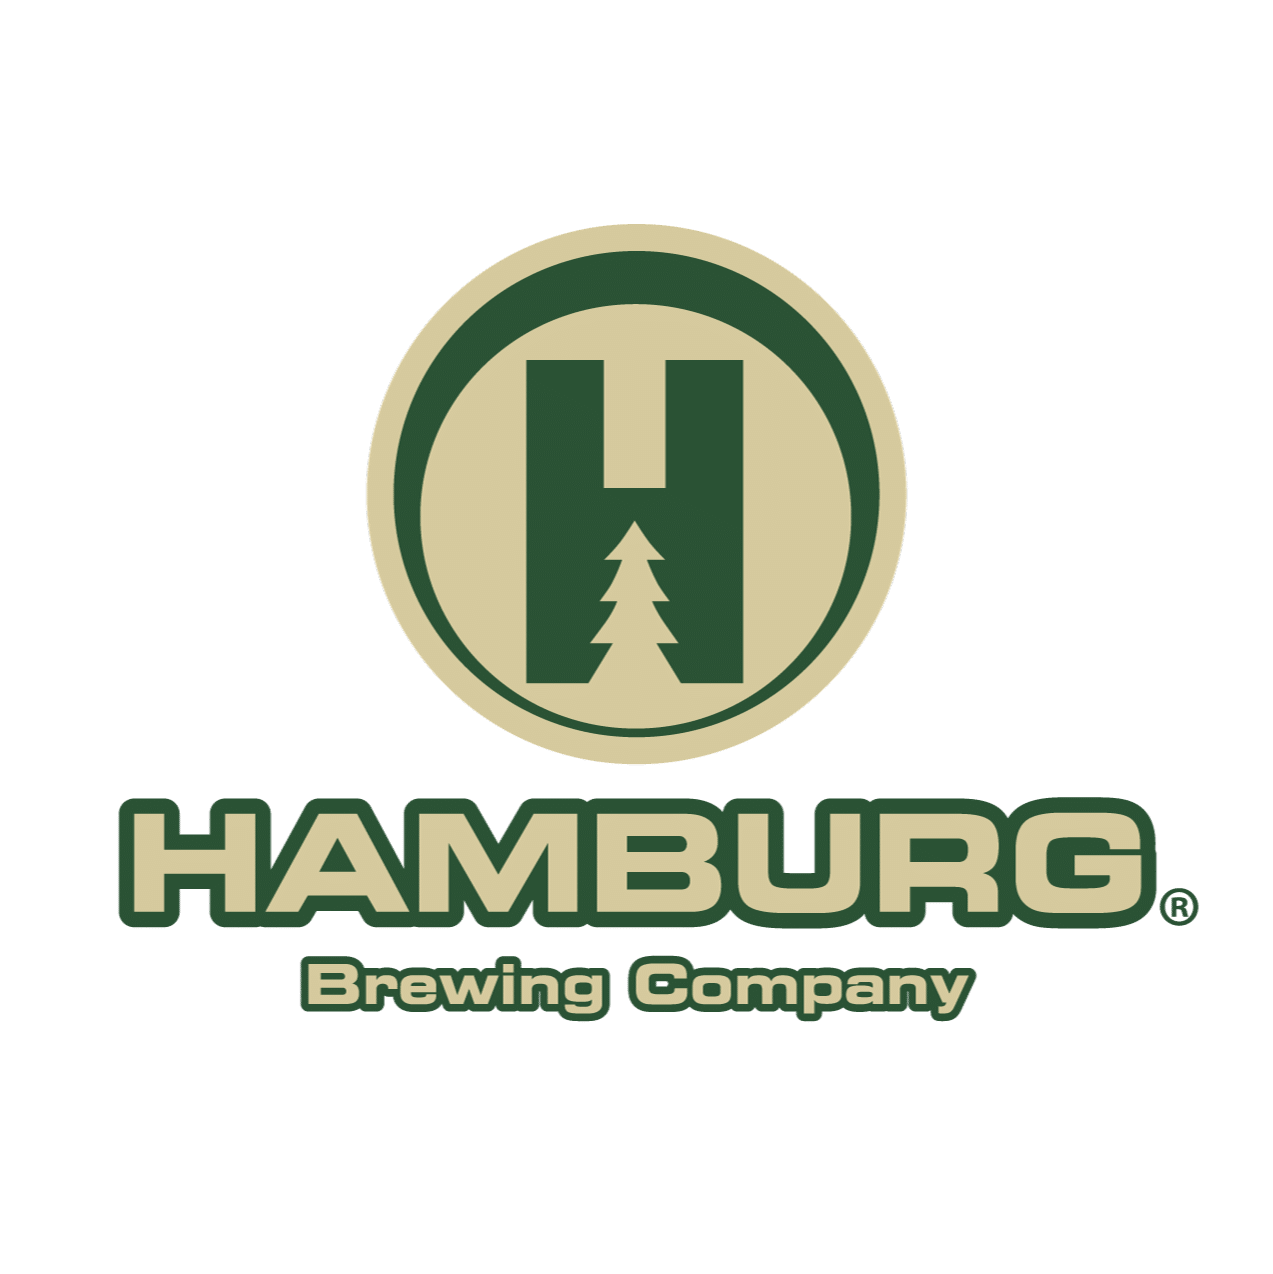 logo_Hamburg